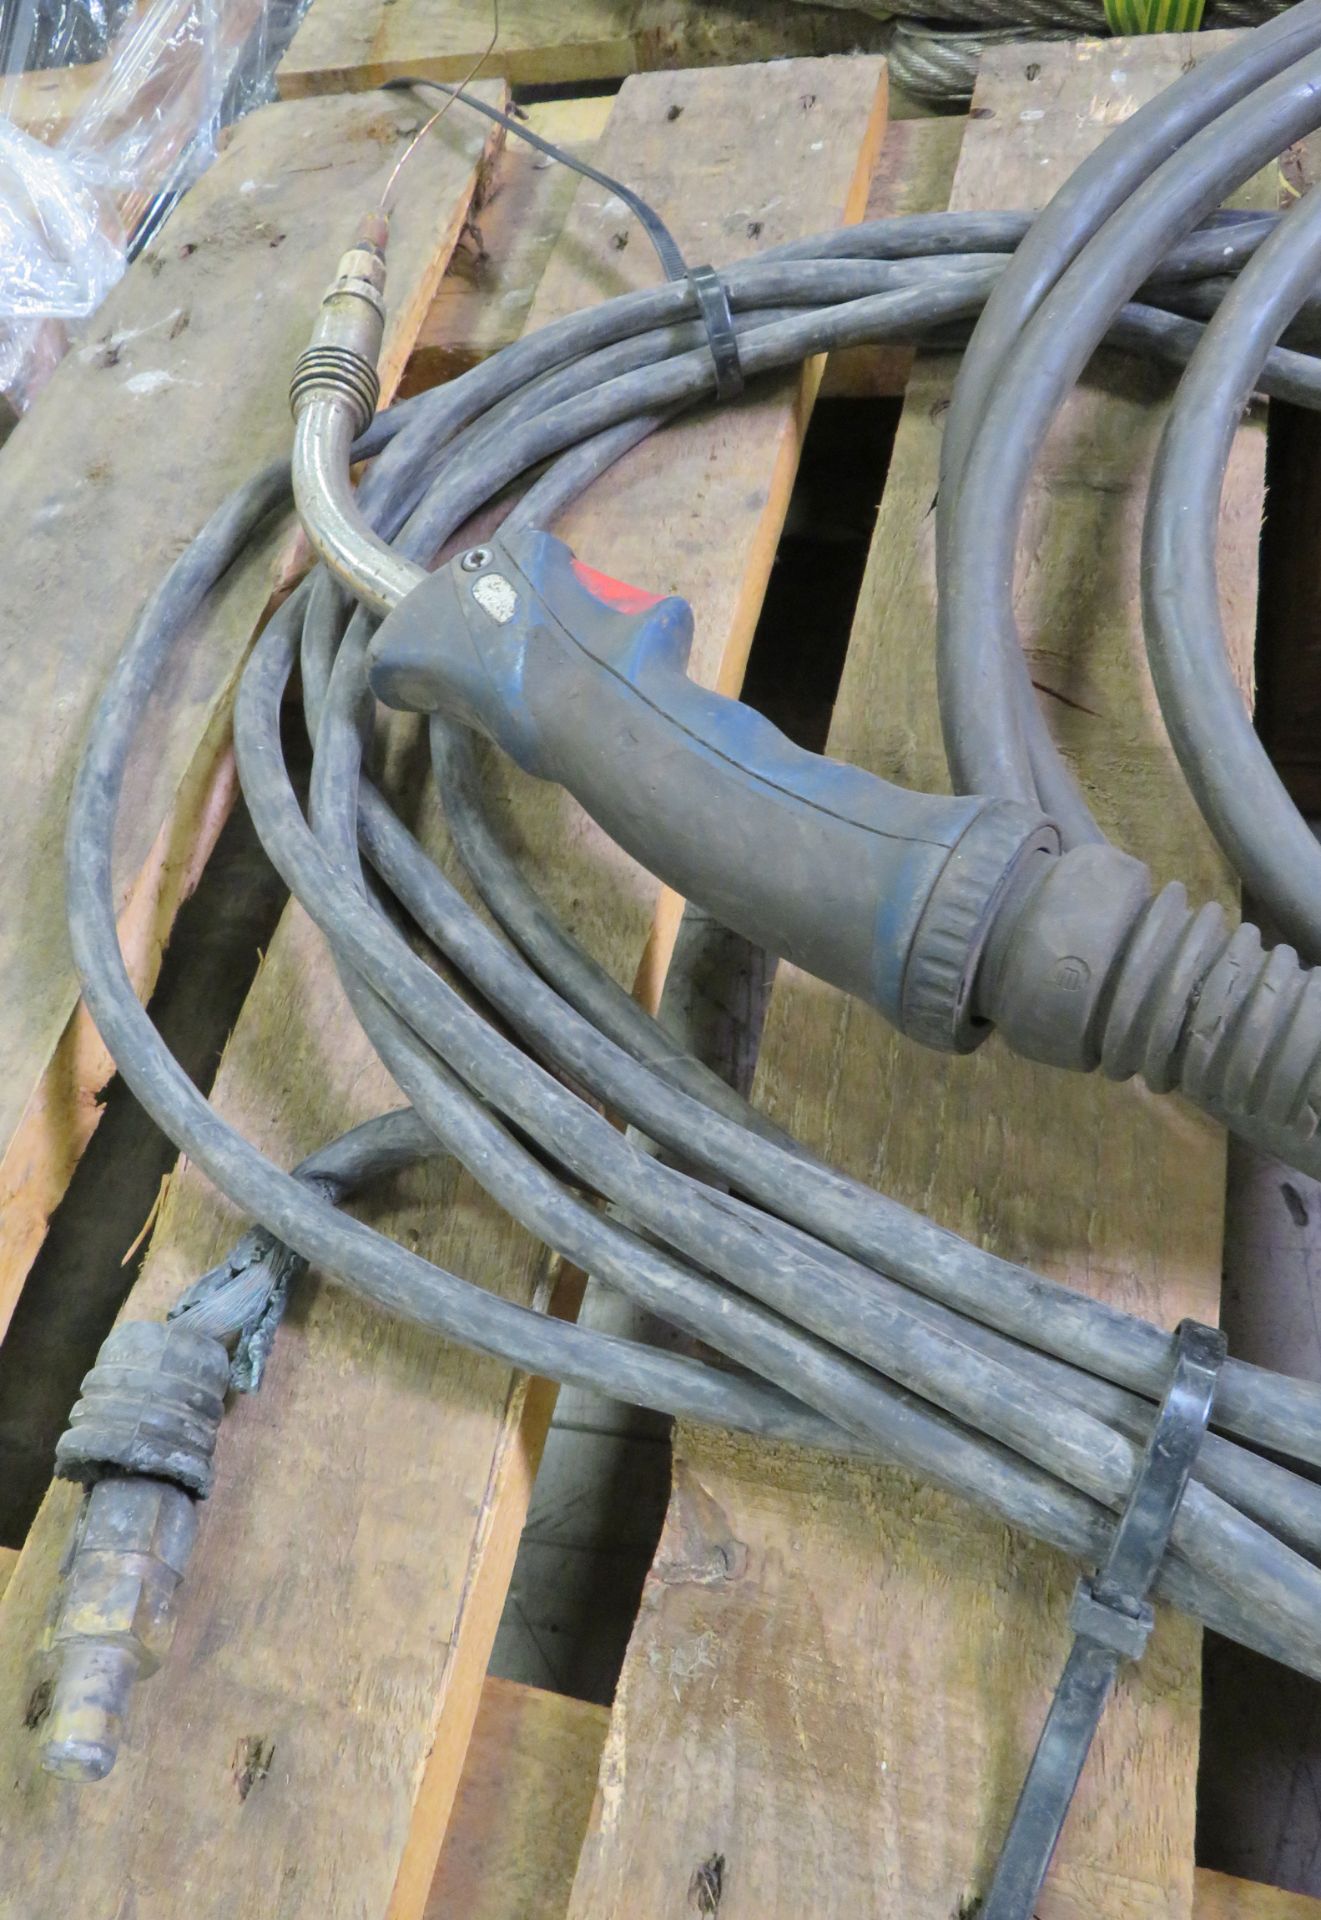 Welder nozzle, connectors - Image 4 of 4